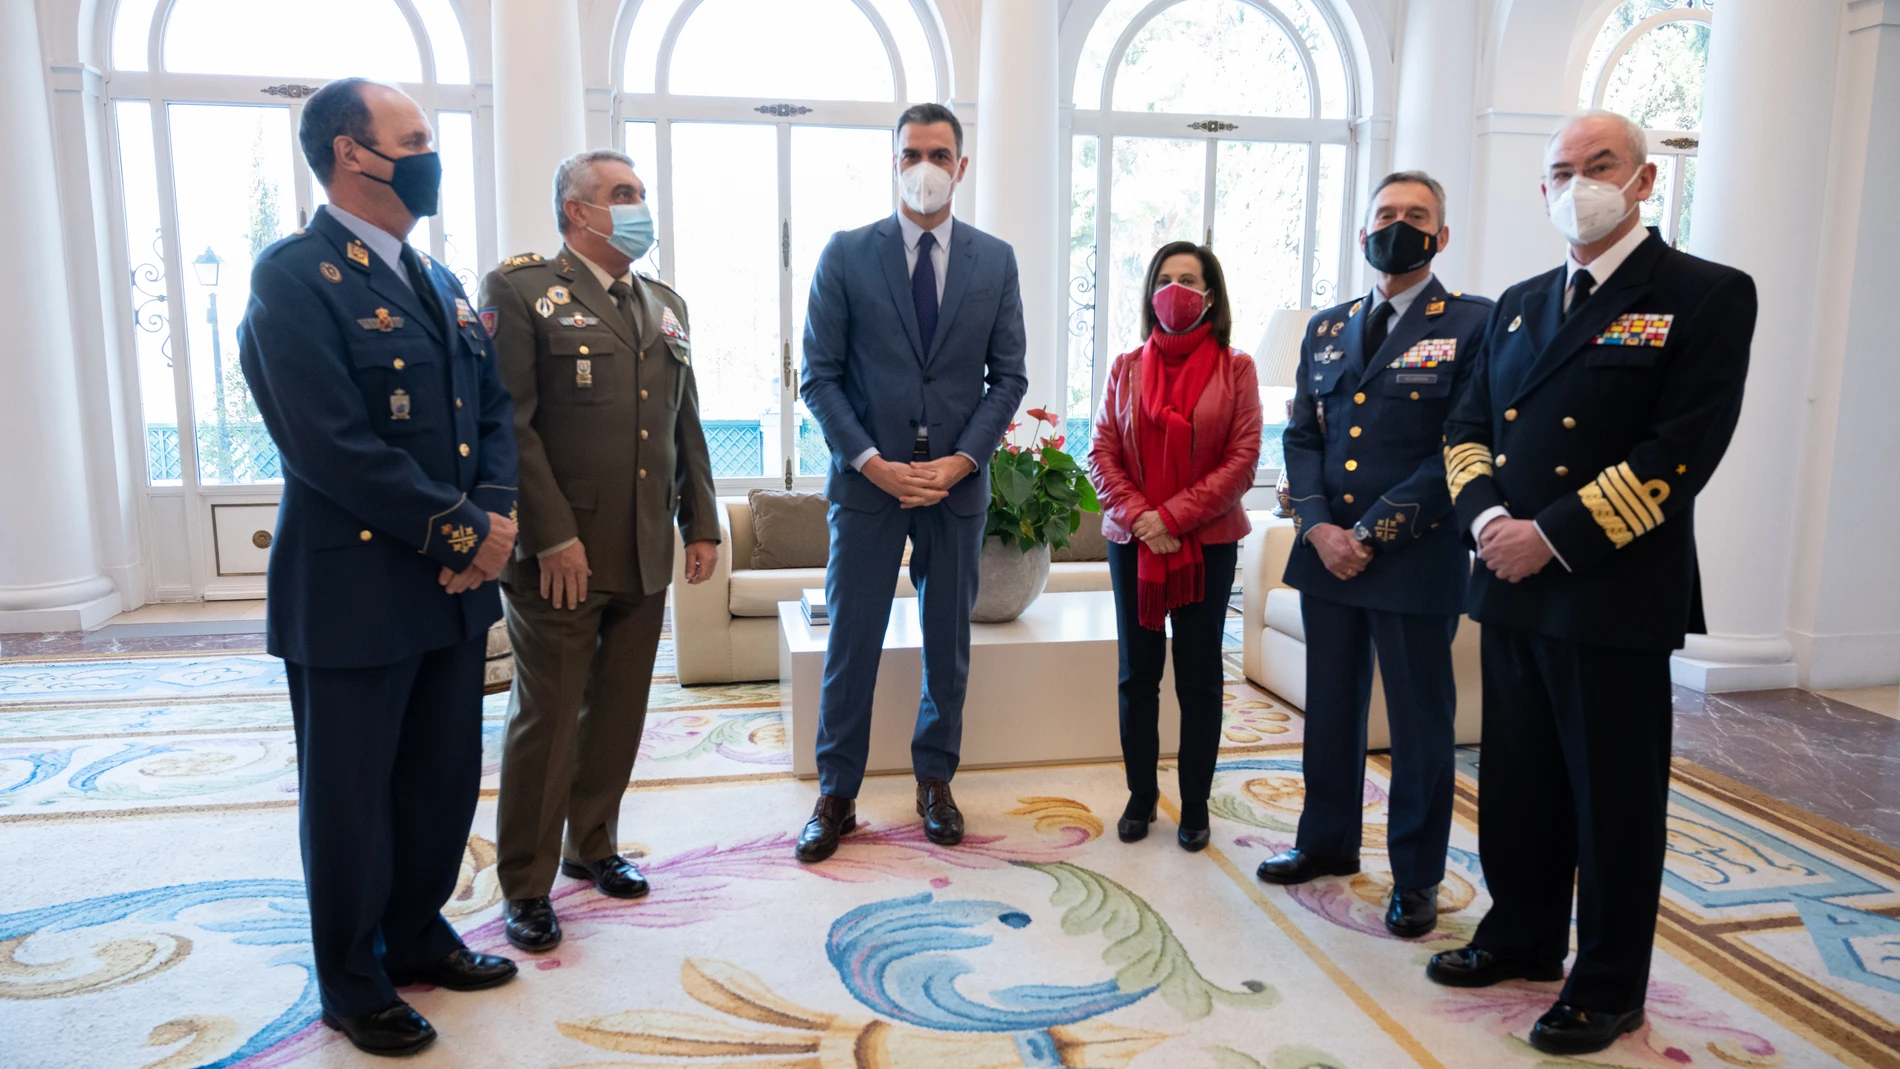 Reunión en Moncloa de Sánchez y Robles con la cúpula militar